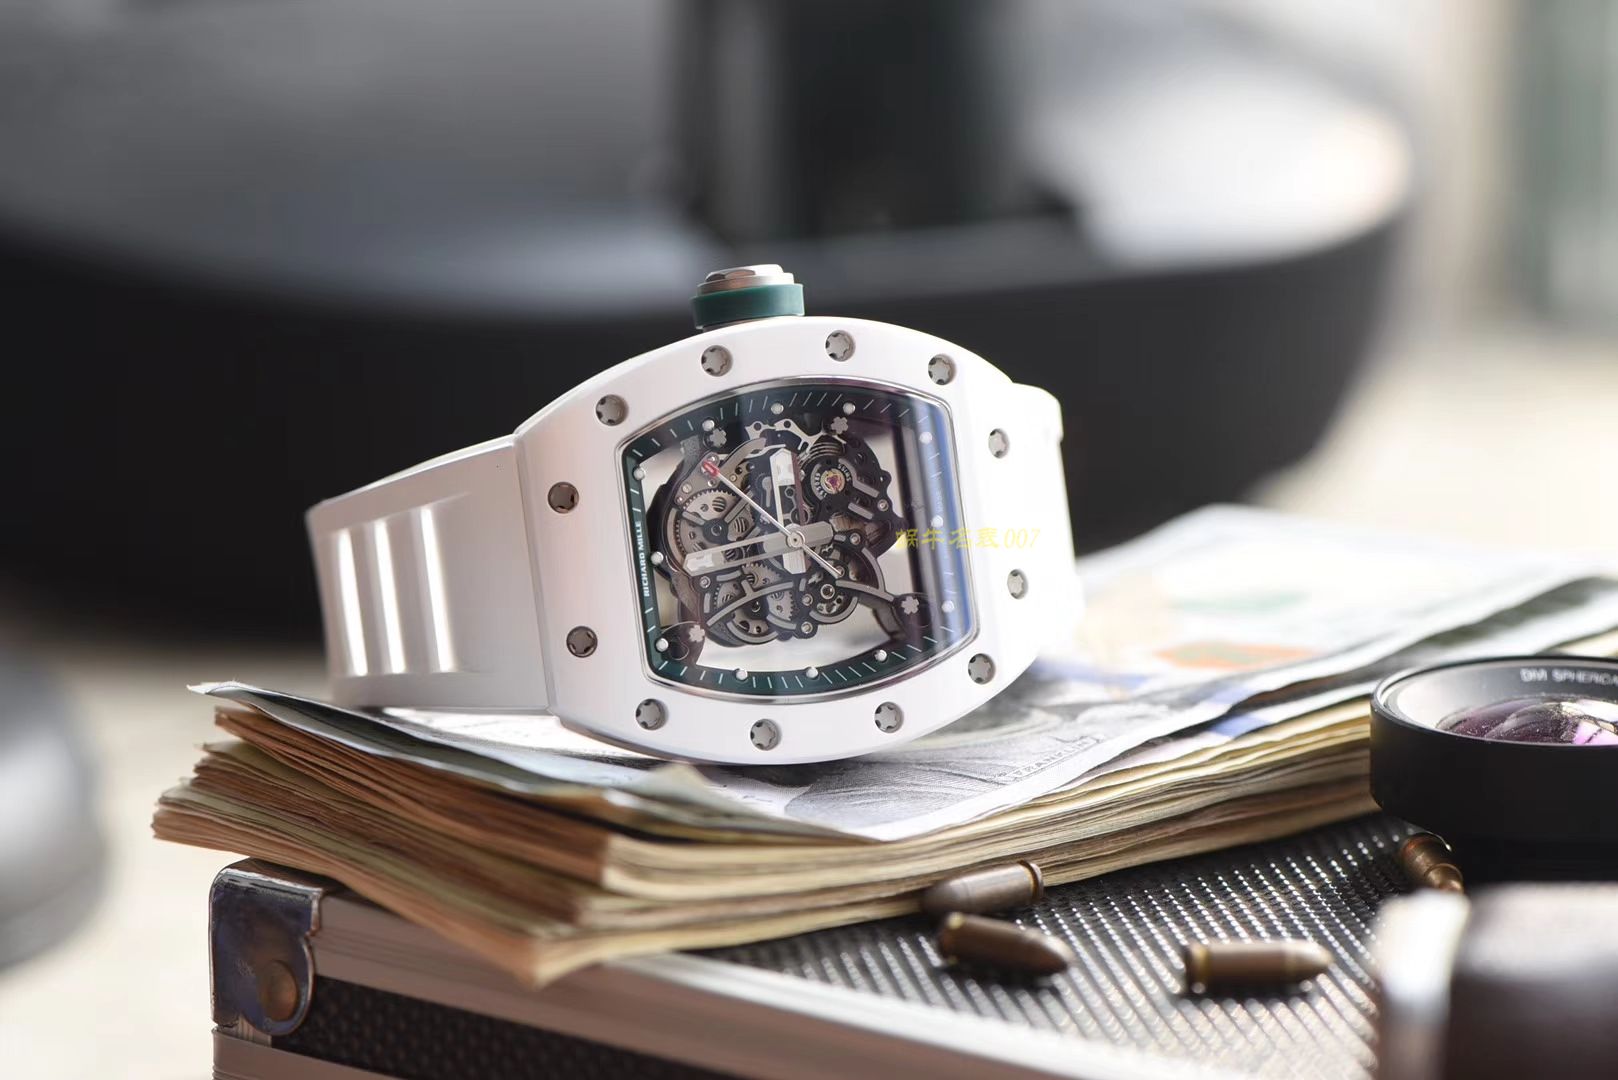 【视频评测】RICHARD MILLE里查德米尔男士系列RM 055腕表【KV一比一超A高仿手表】 